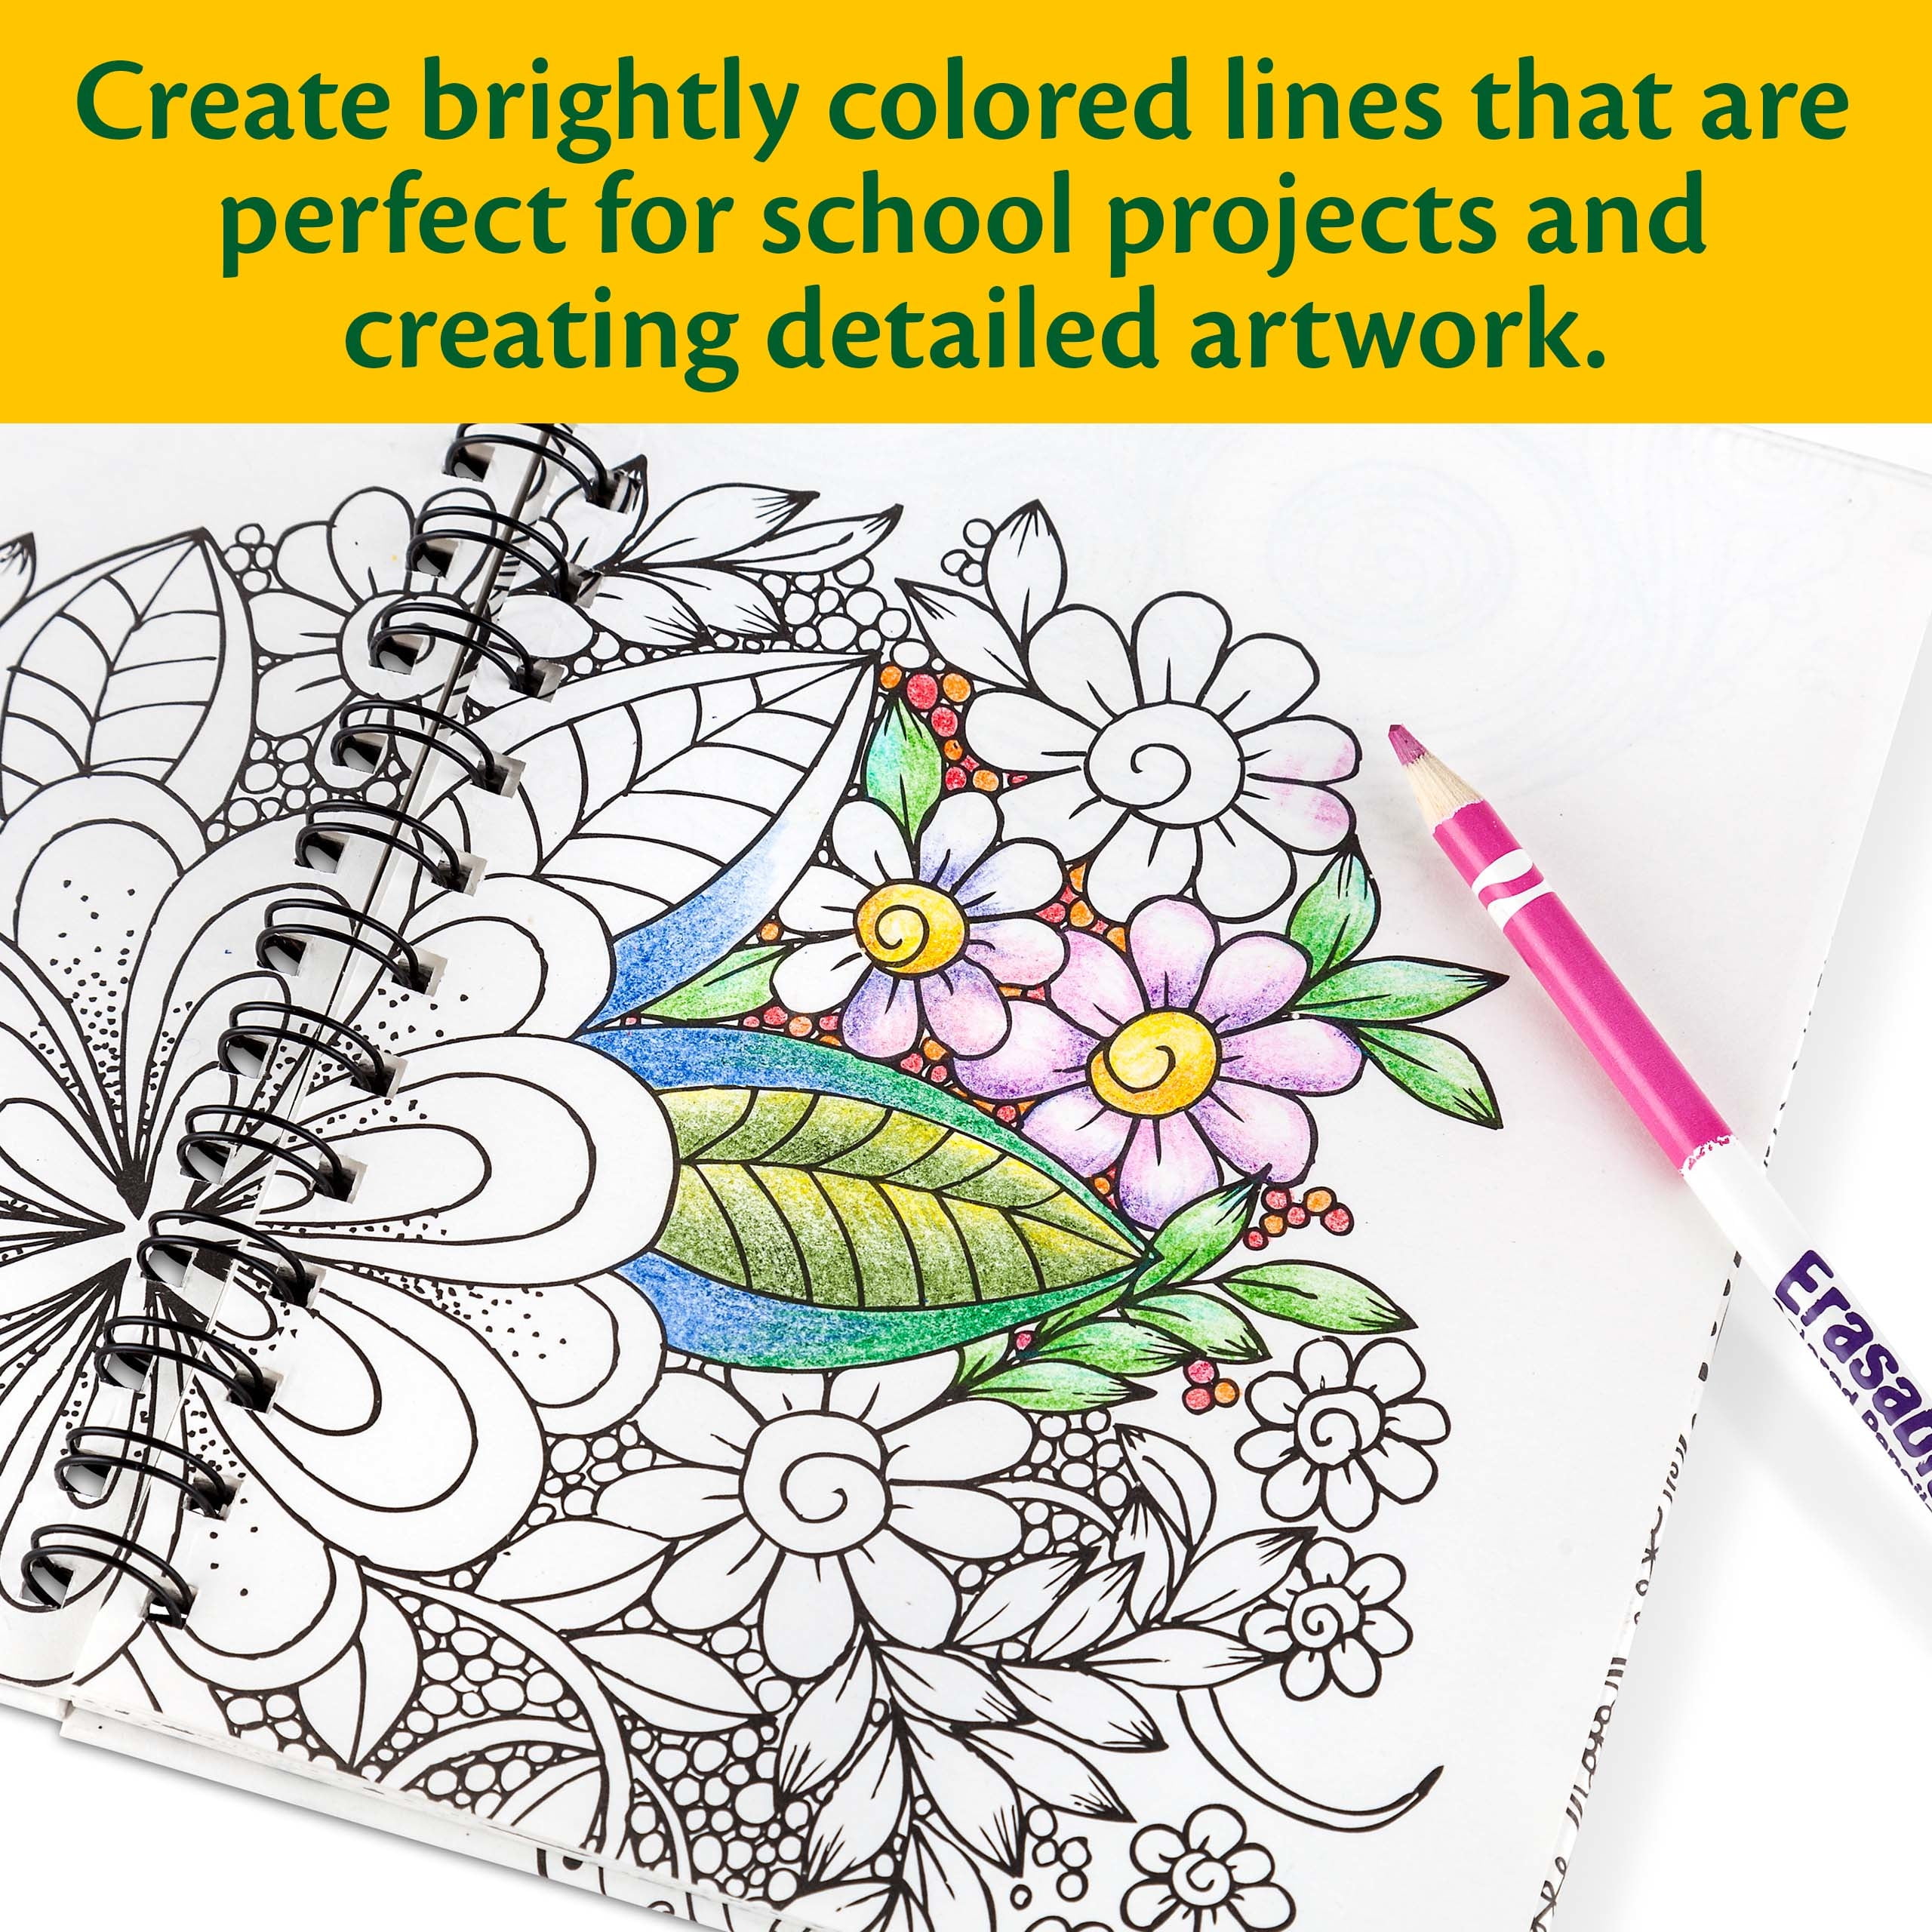 Crayola Erasable Colored Pencils - Zerbee